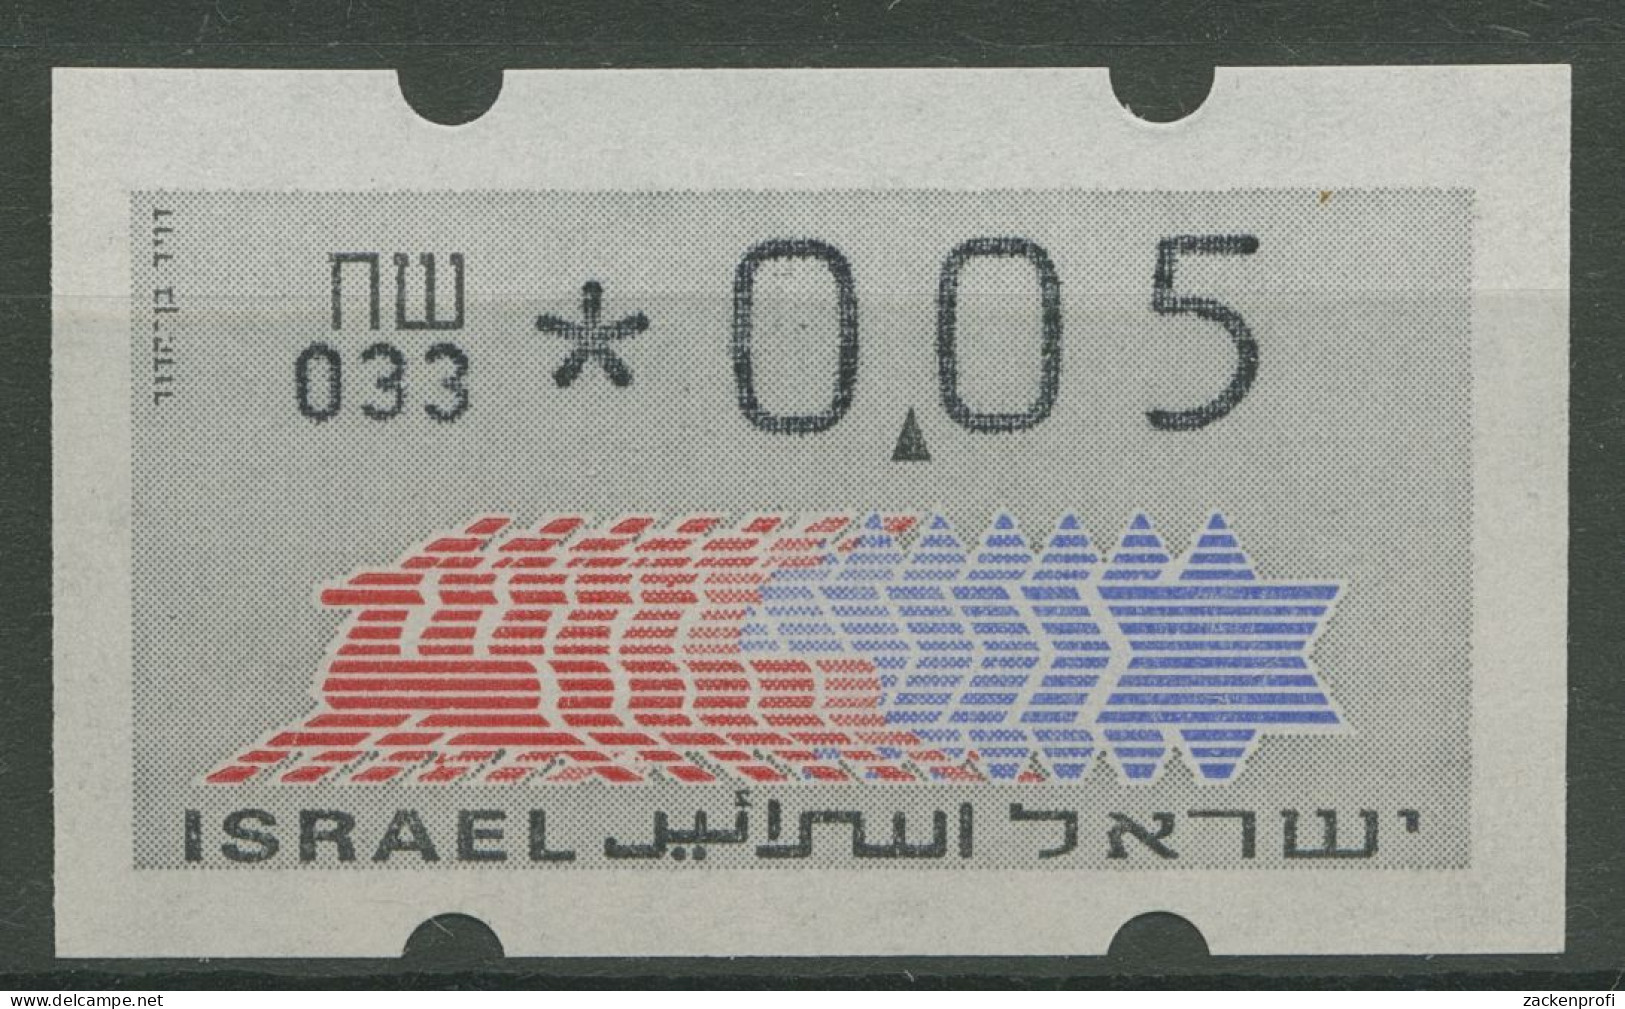 Israel ATM 1990 Hirsch Automat 033 Einzelwert ATM 3.3.33 Postfrisch - Viñetas De Franqueo (Frama)